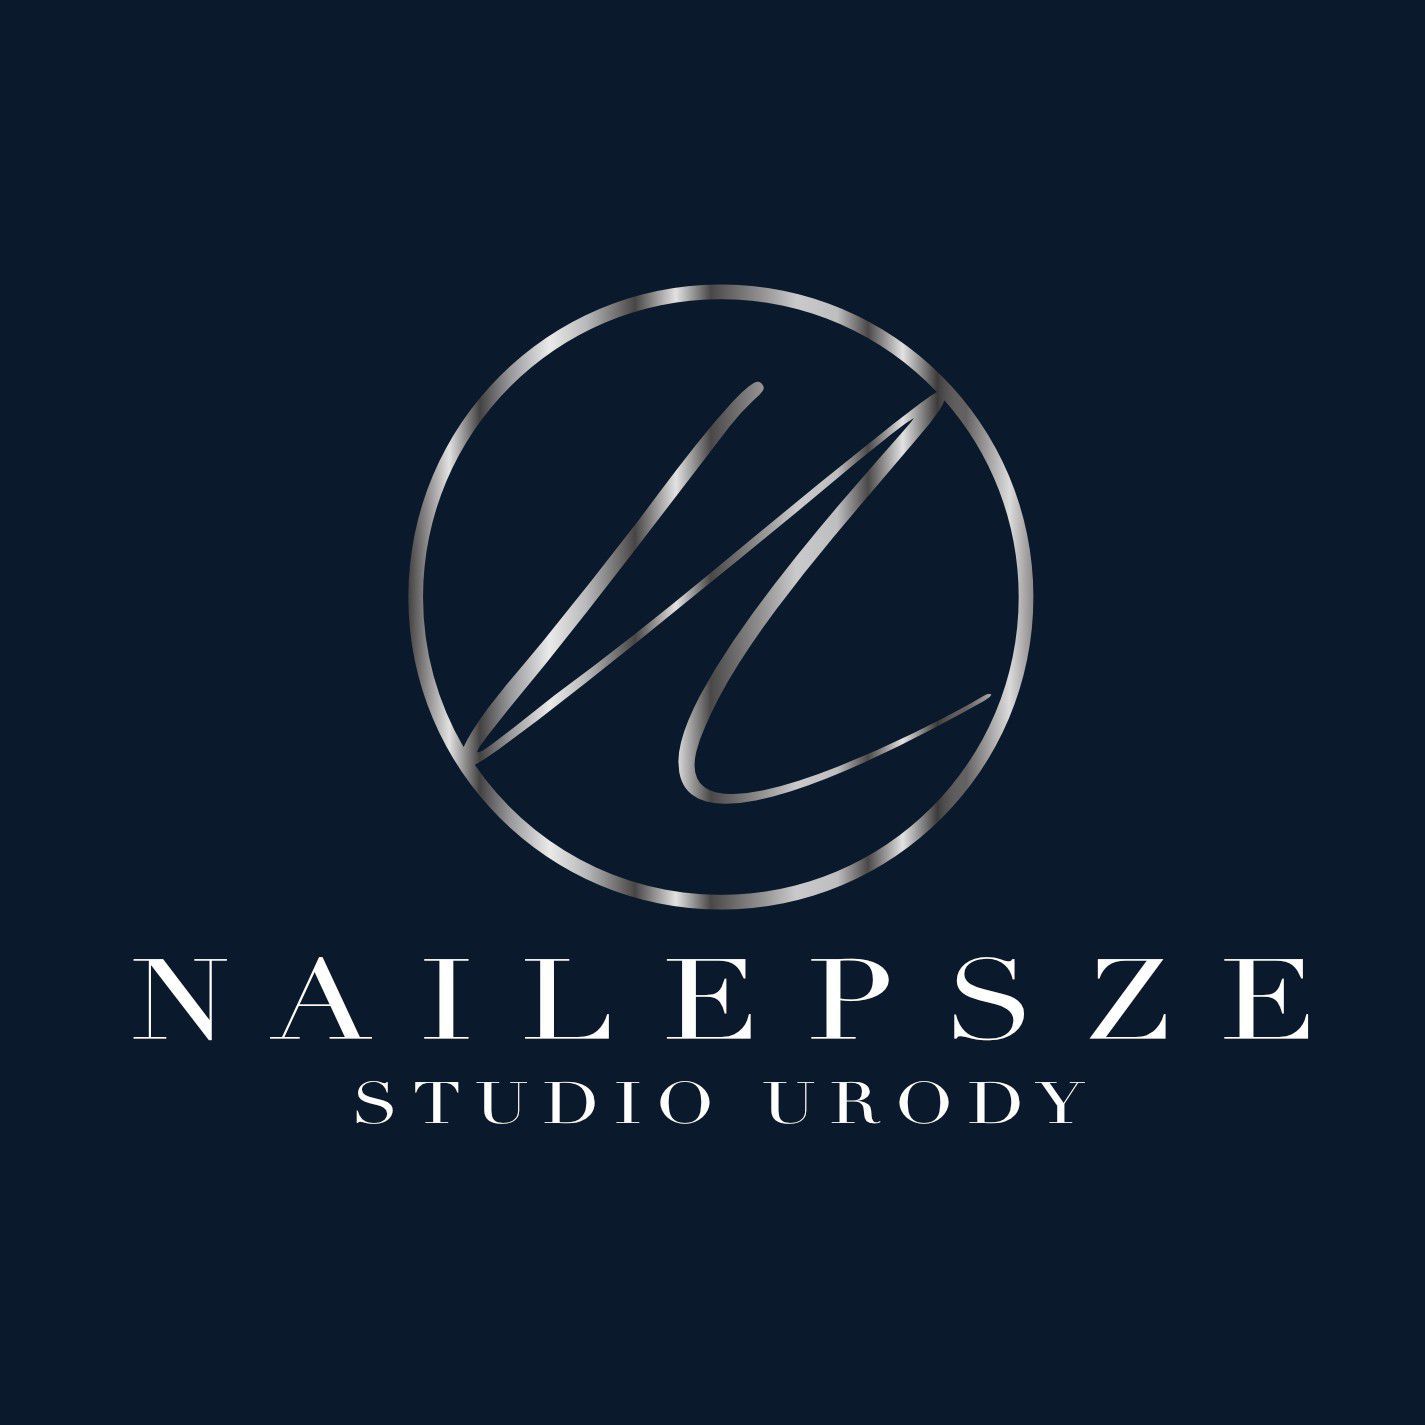 Studio urody NAILepsze, Grabskiego 8, 40-826, Katowice